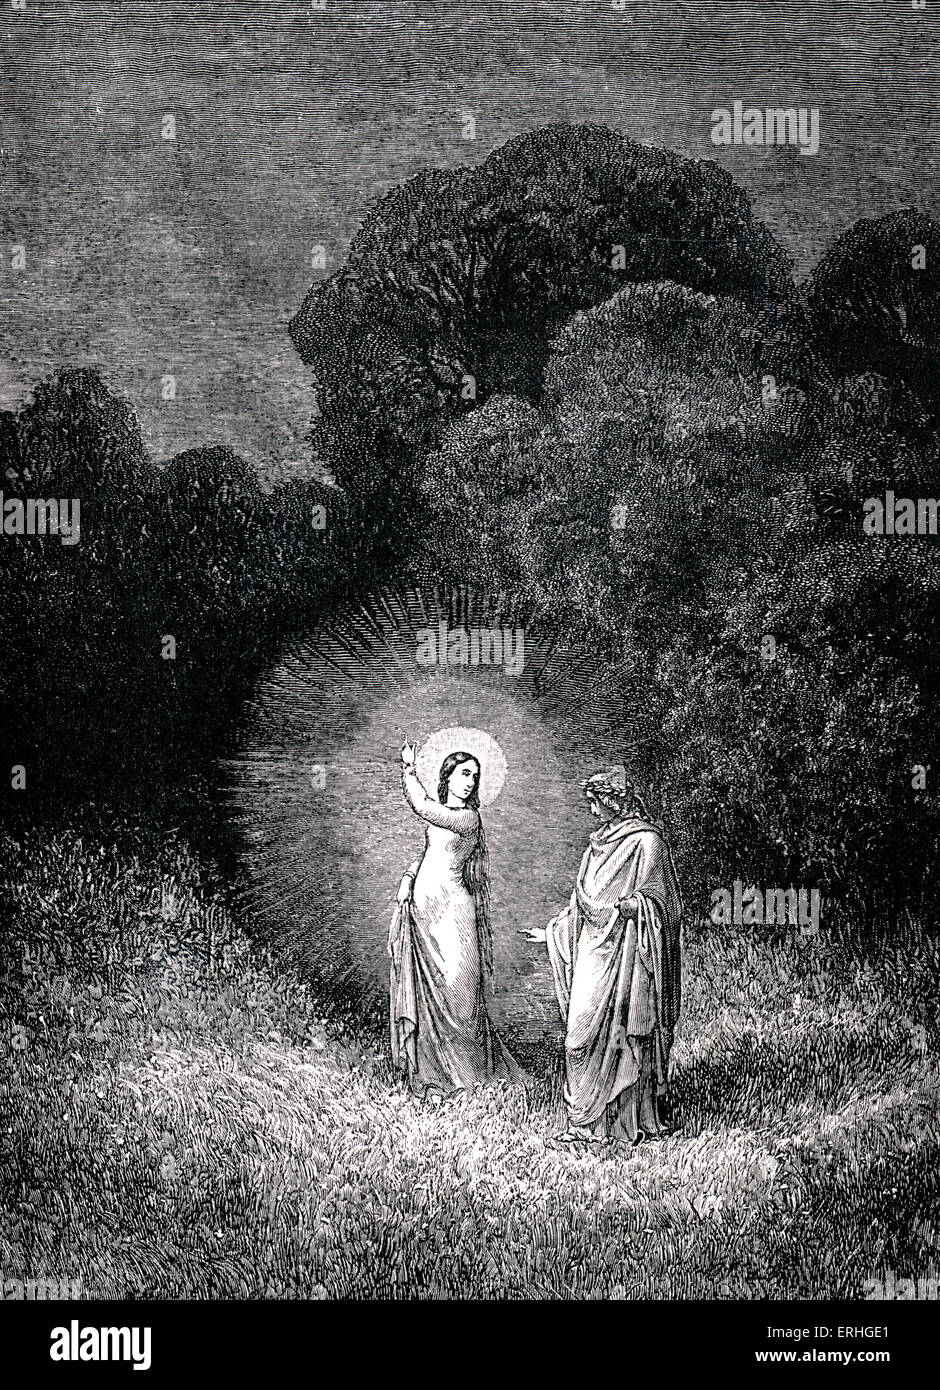 "La Divina Commedia, Hell' di Dante Alighieri - La Divina Commedia, l'Inferno - Canto II (2). Illustrazione di Gustave Doré per Foto Stock